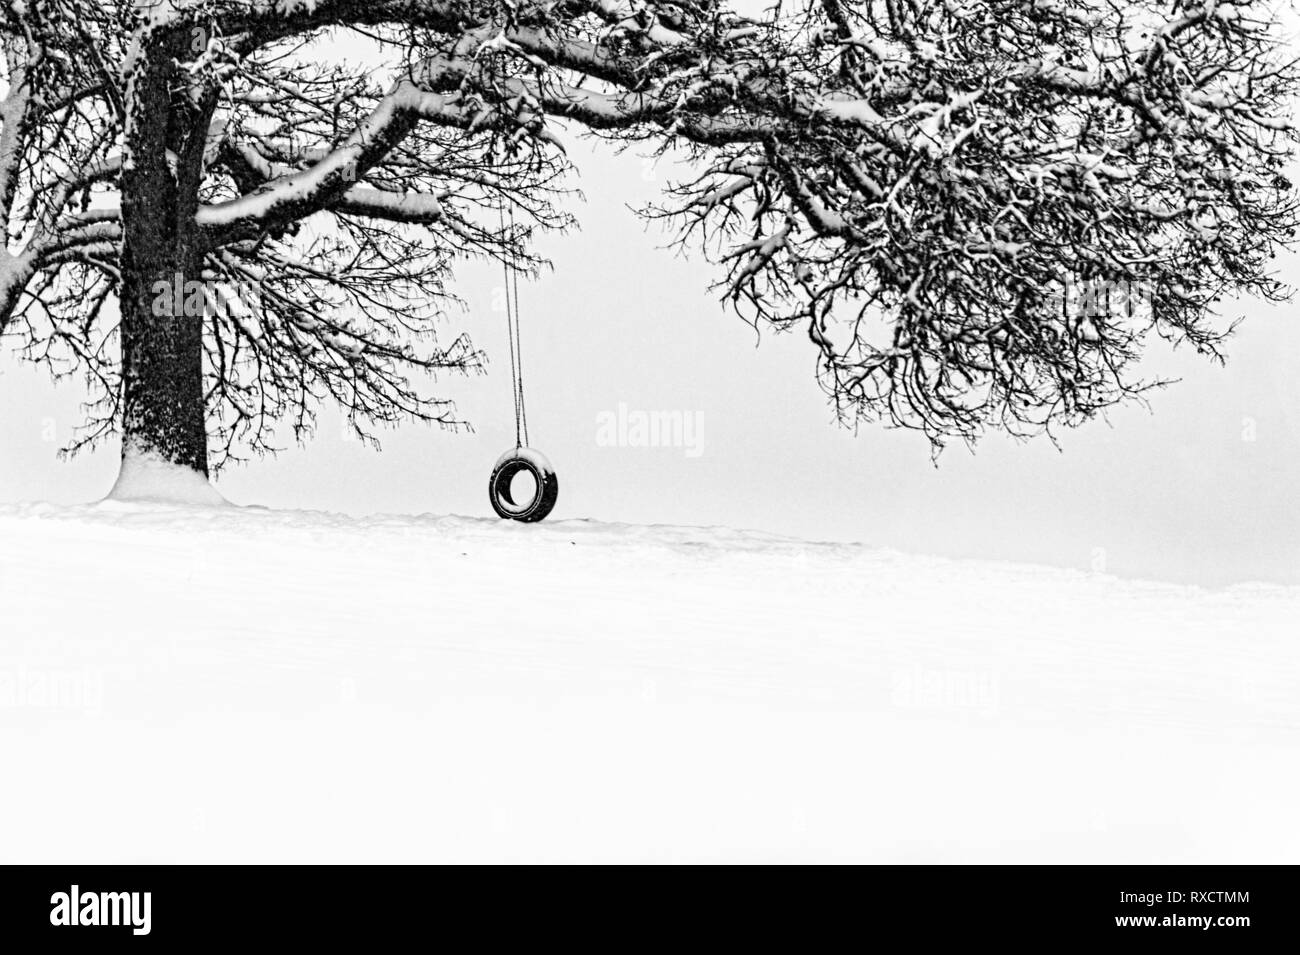 In inverno la neve cade con frigida temps lasciando questo tire swing abbandonato fino alle condizioni atmosferiche migliori. Foto Stock